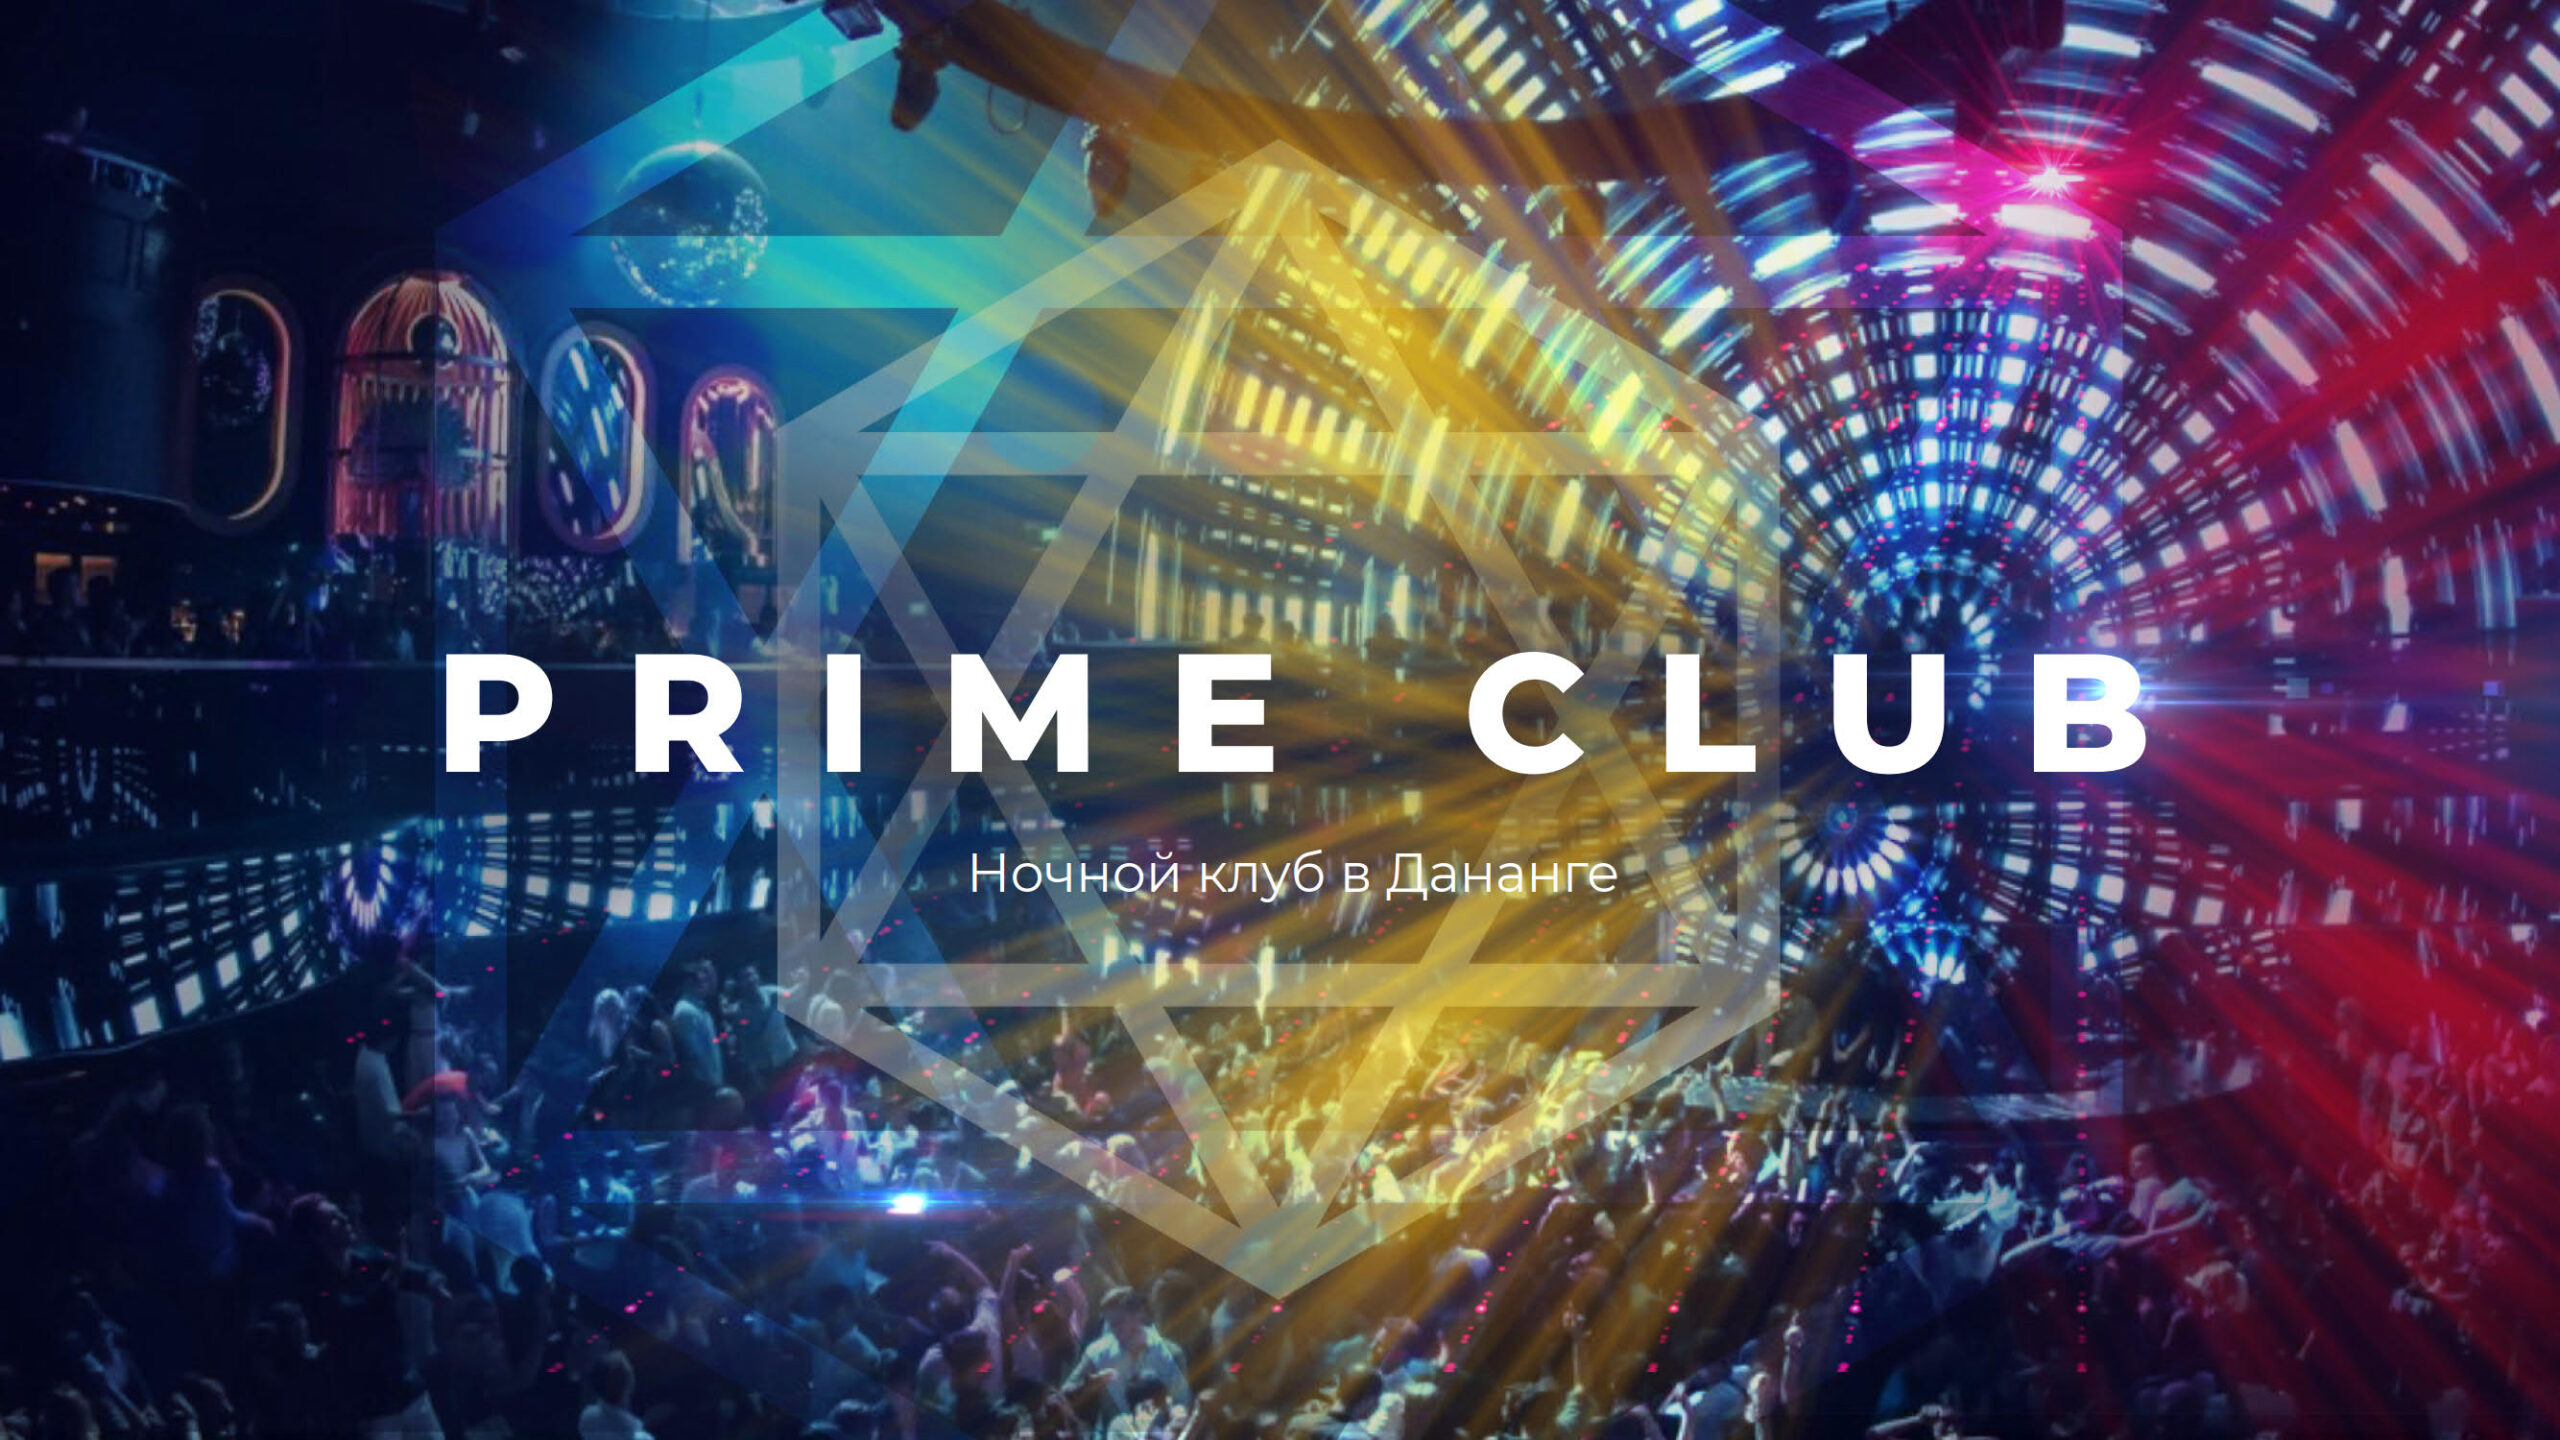 Презентация ночного клуба Prime Club в Дананге слайд 1